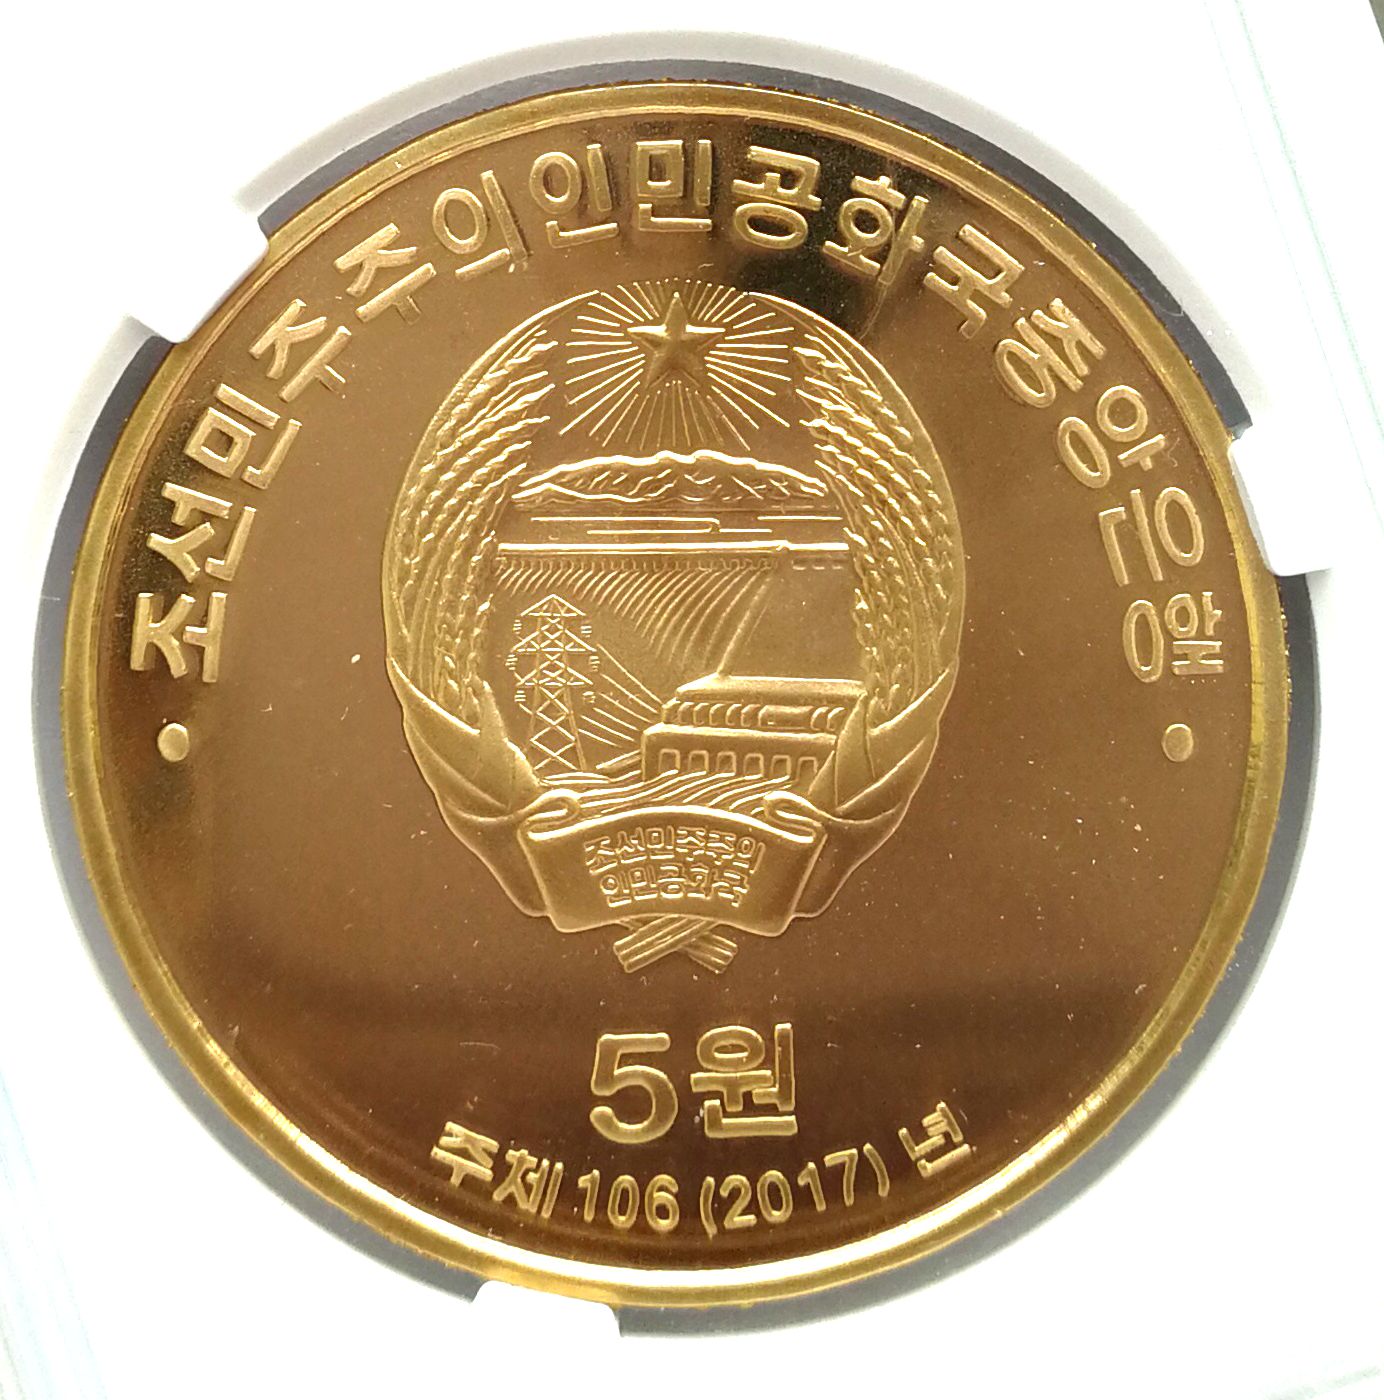 L3300, Korea Proof Coin "45th Anni. Constitution", Bronze 2017, Korean Grade - Click Image to Close